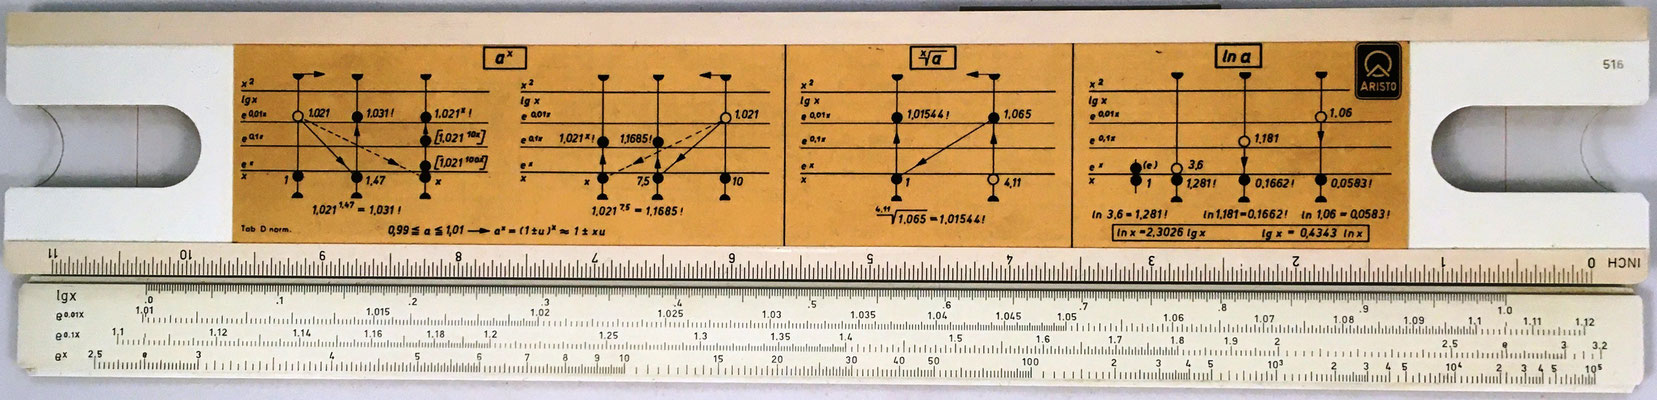 Reverso regla ARISTO 967U, fabricada por Dennert & Paper y de la reglilla